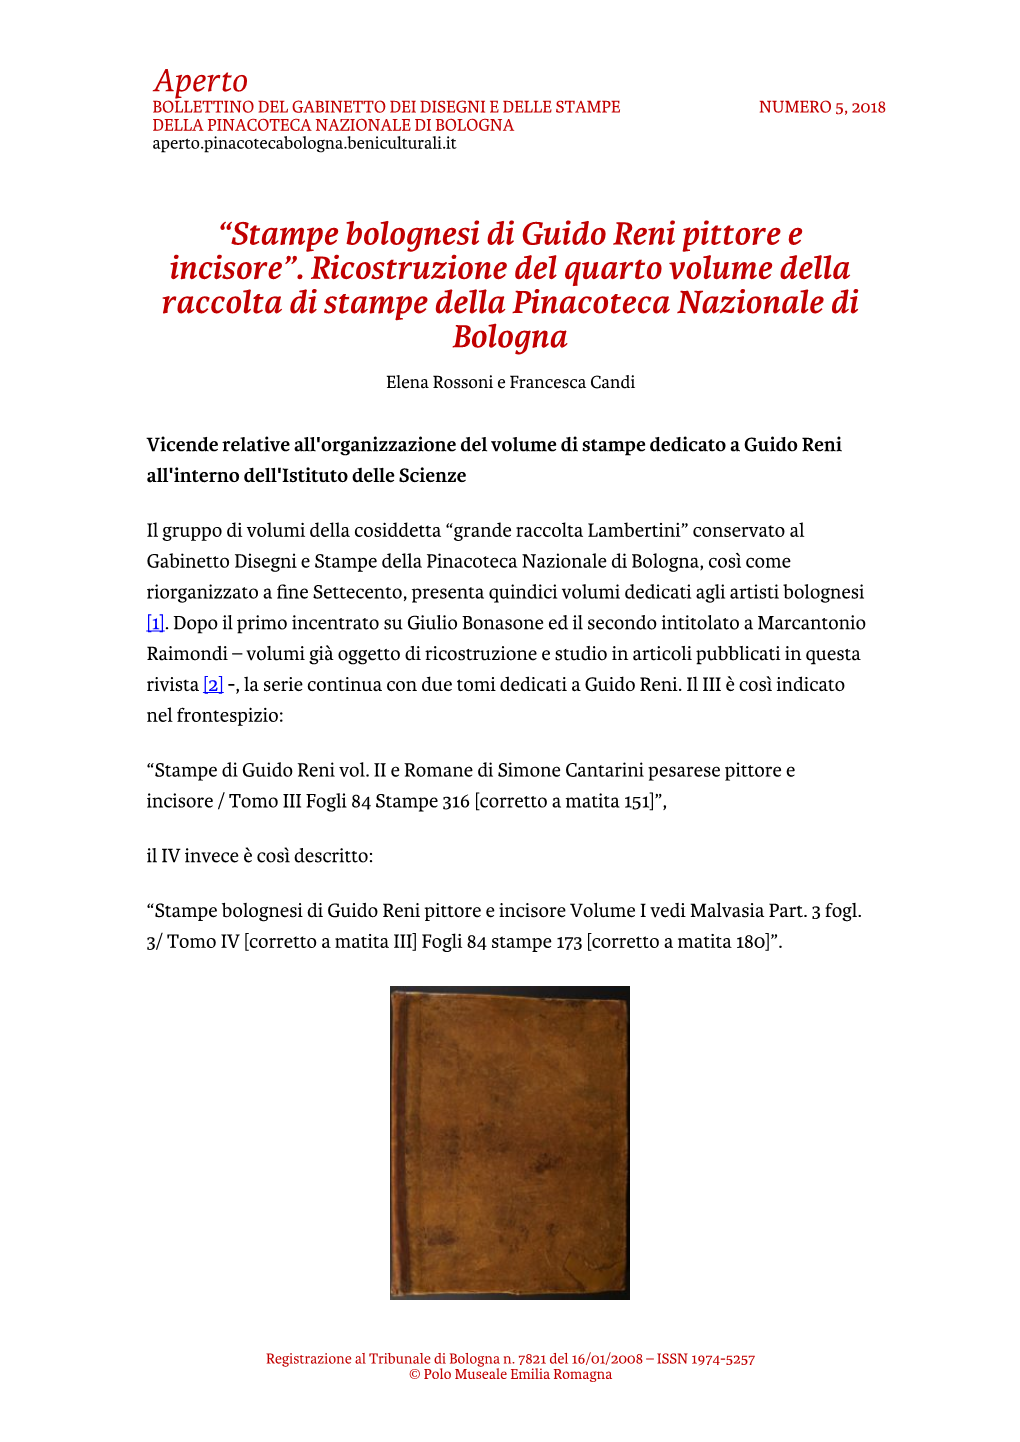 Aperto “Stampe Bolognesi Di Guido Reni Pittore E Incisore